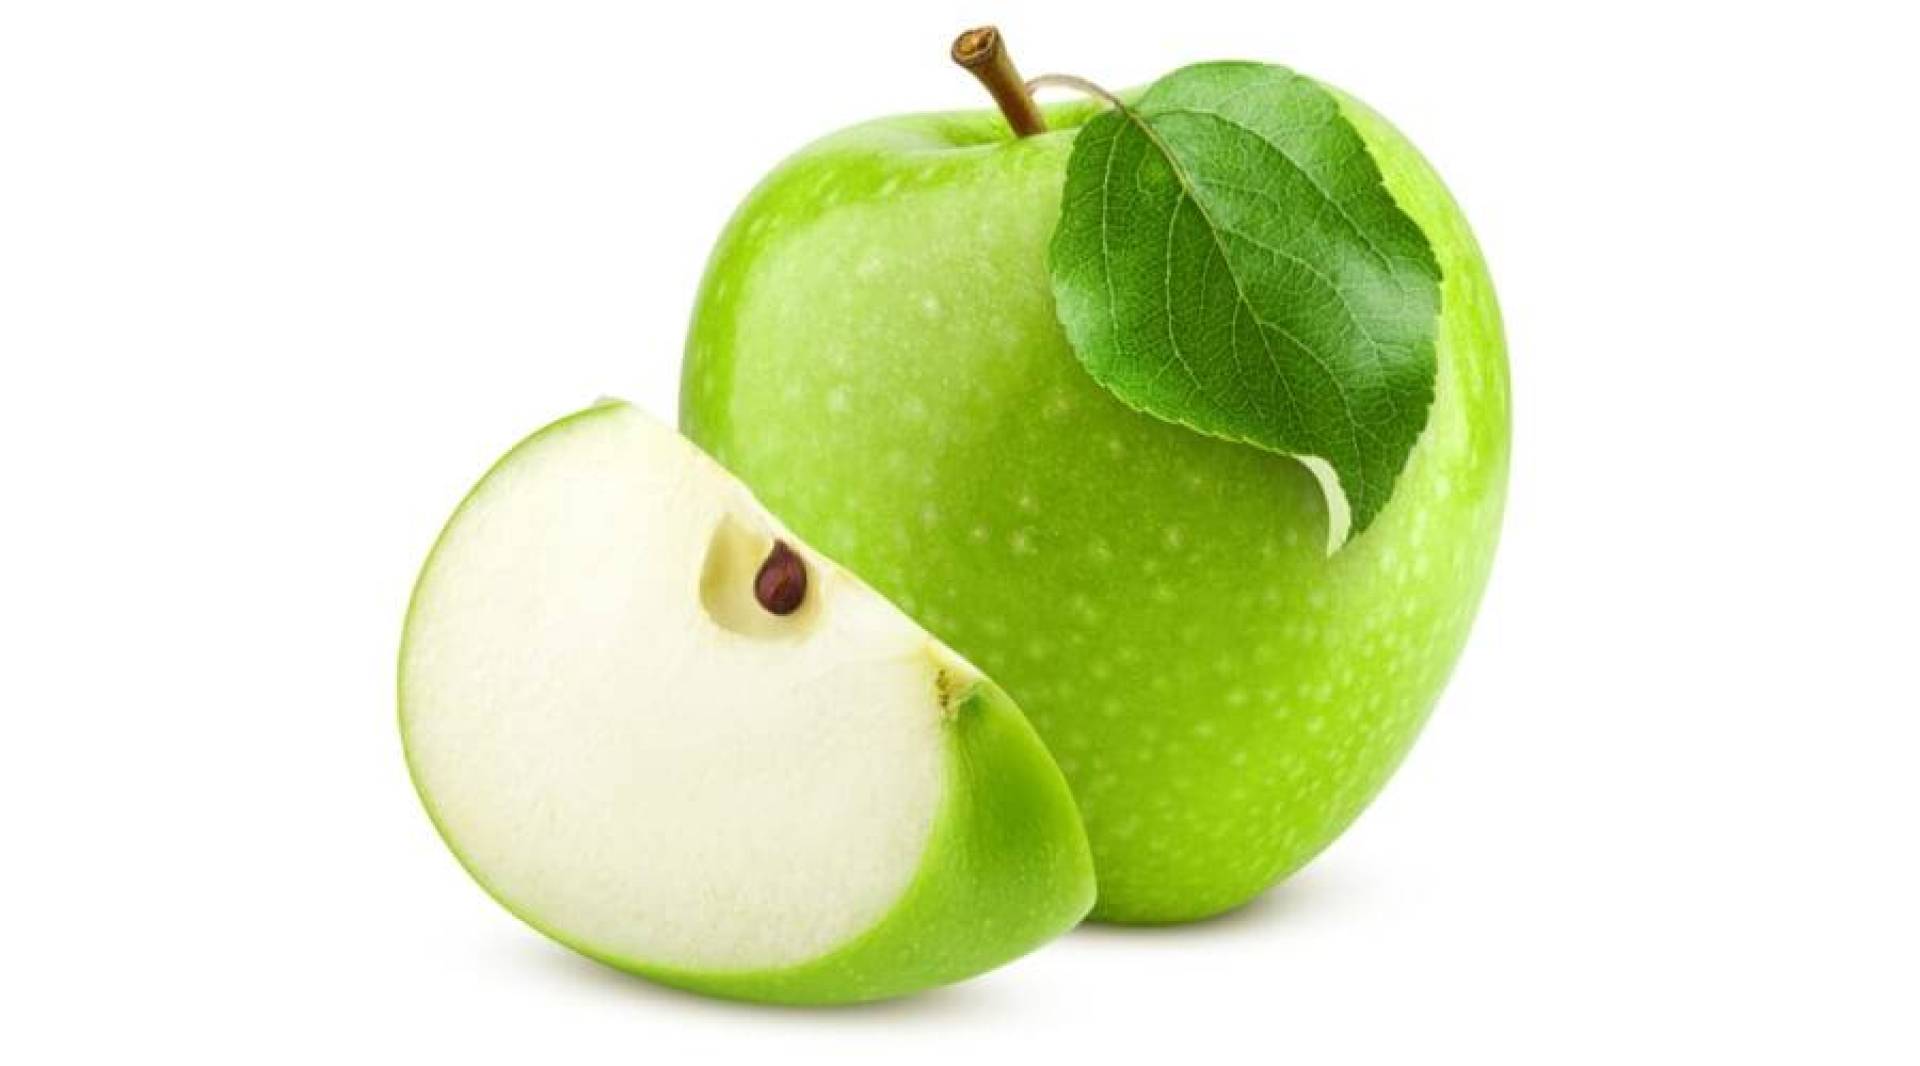 التفاح الأخضر كنز غذائي طبيعي .. إليك أهم فوائده الصحية